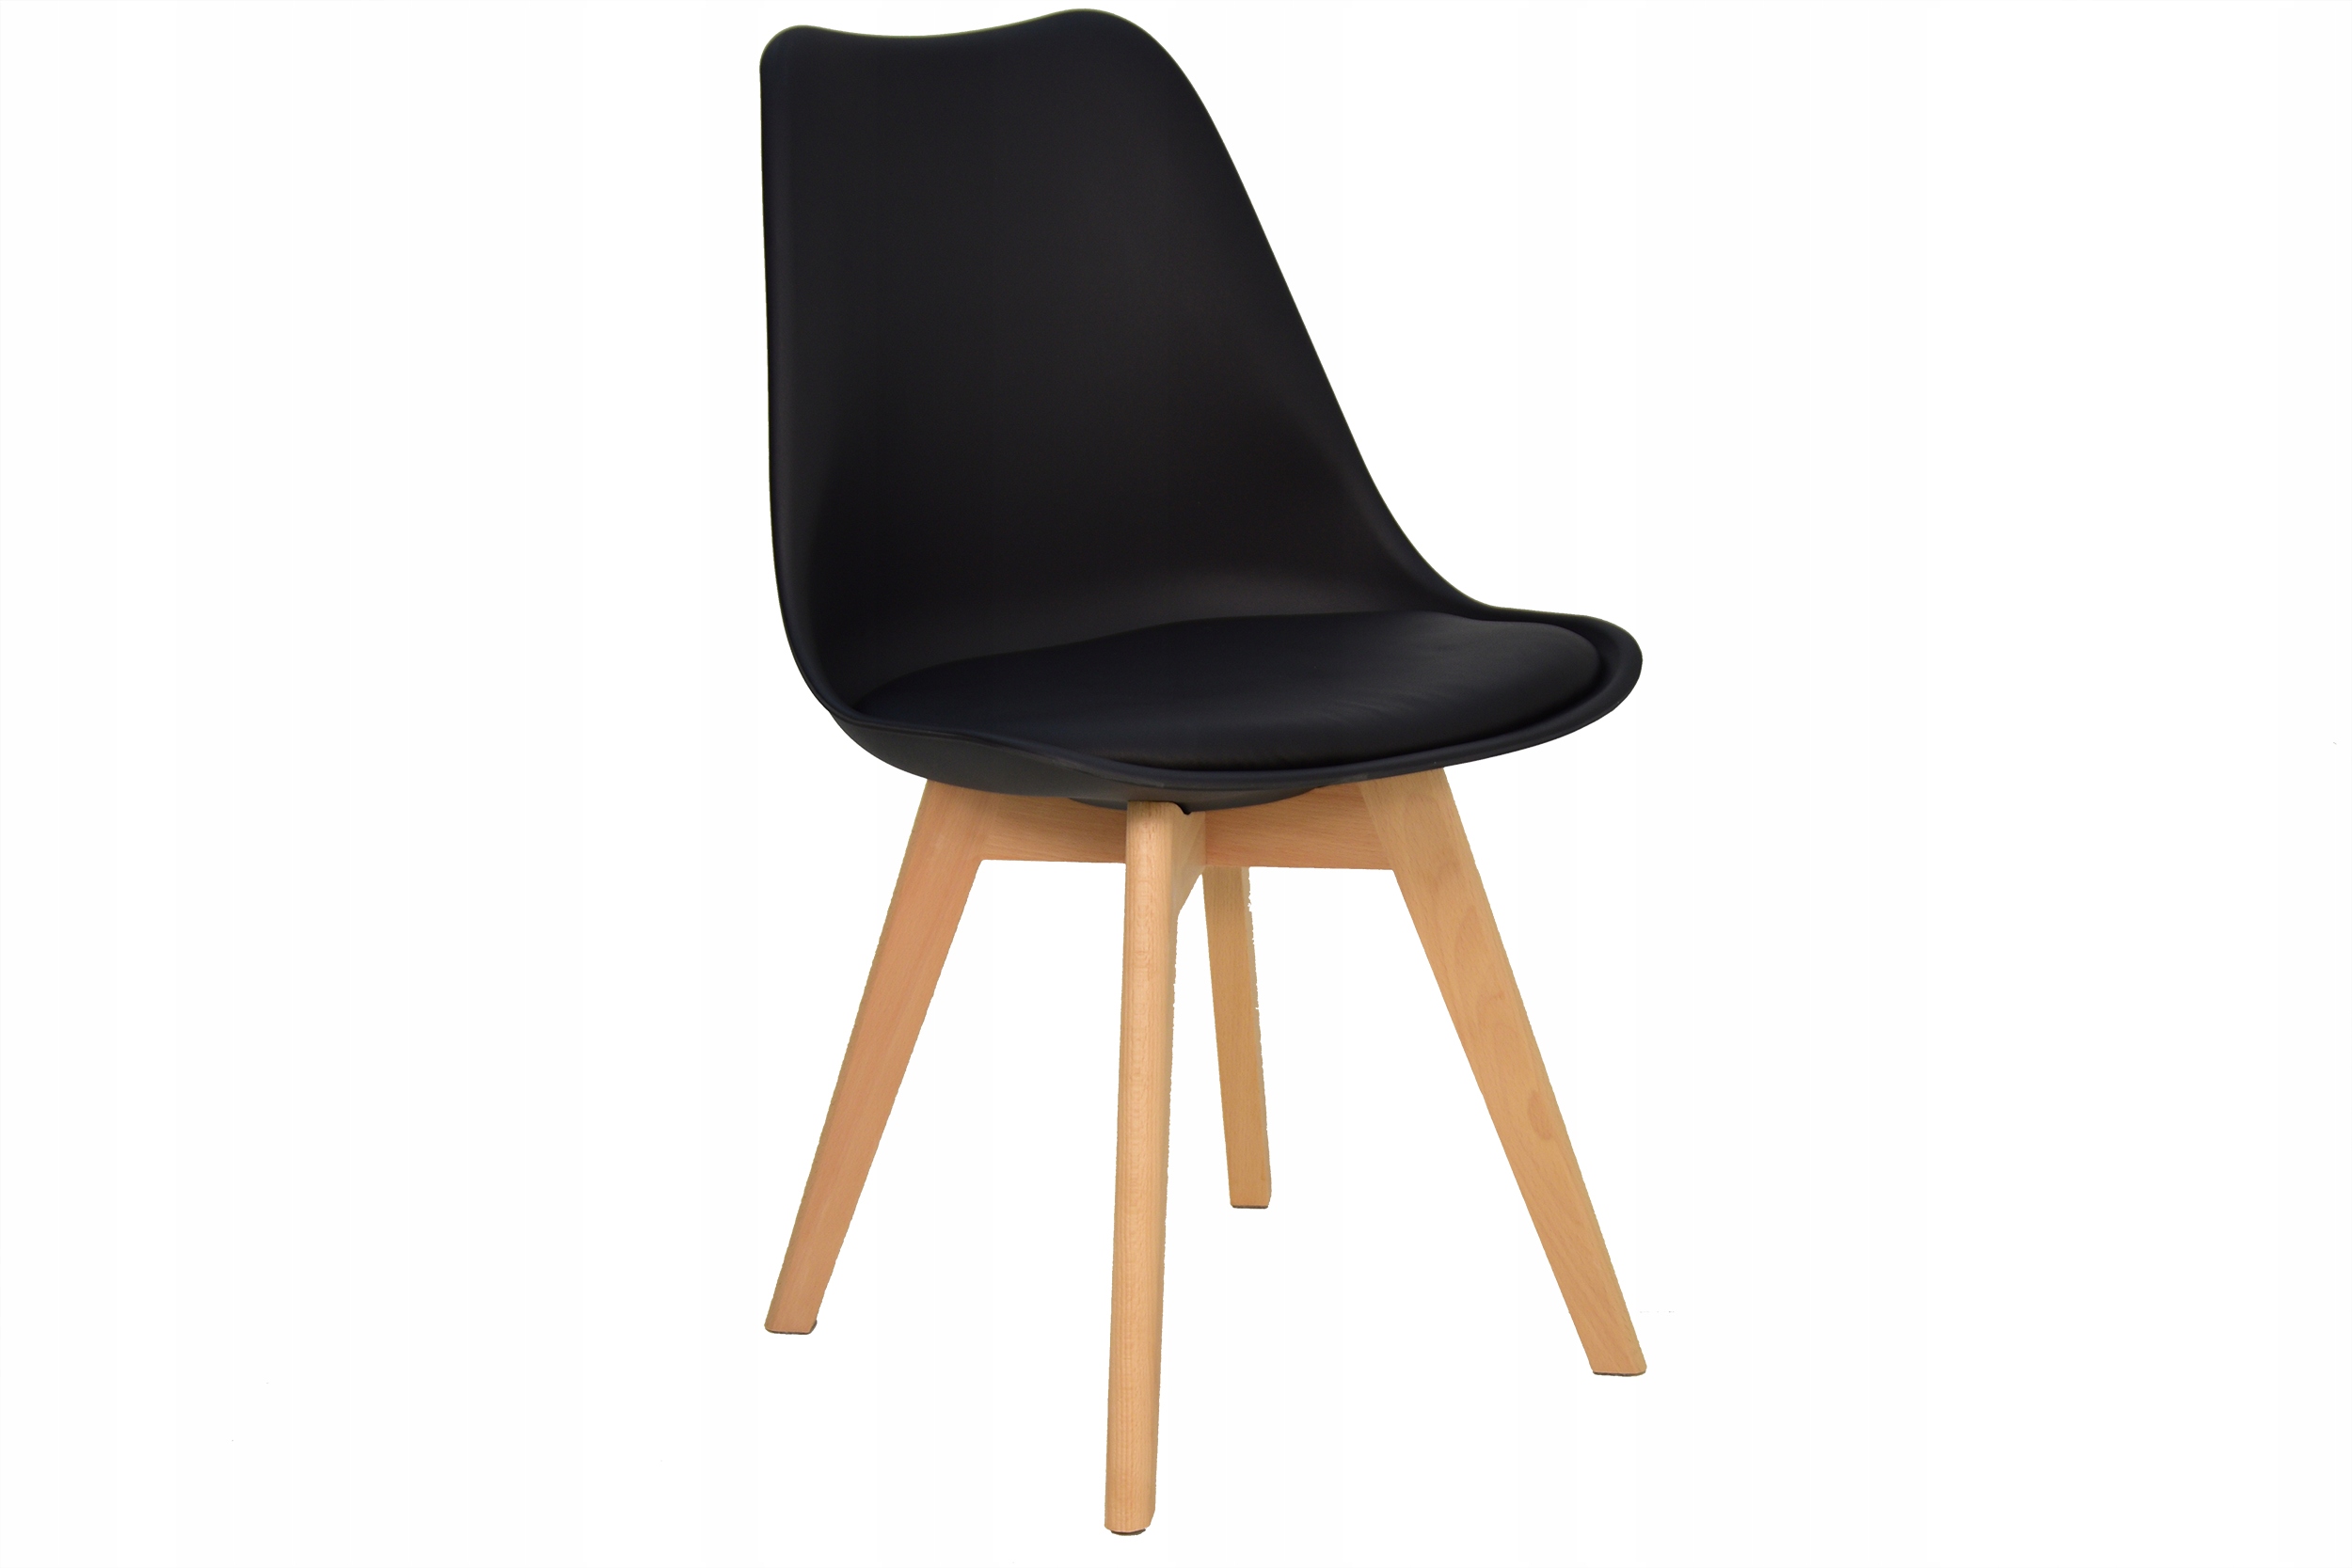 4 скандинавских стула + круглый стол 100 см Код производителя Ol-3 + SL-02